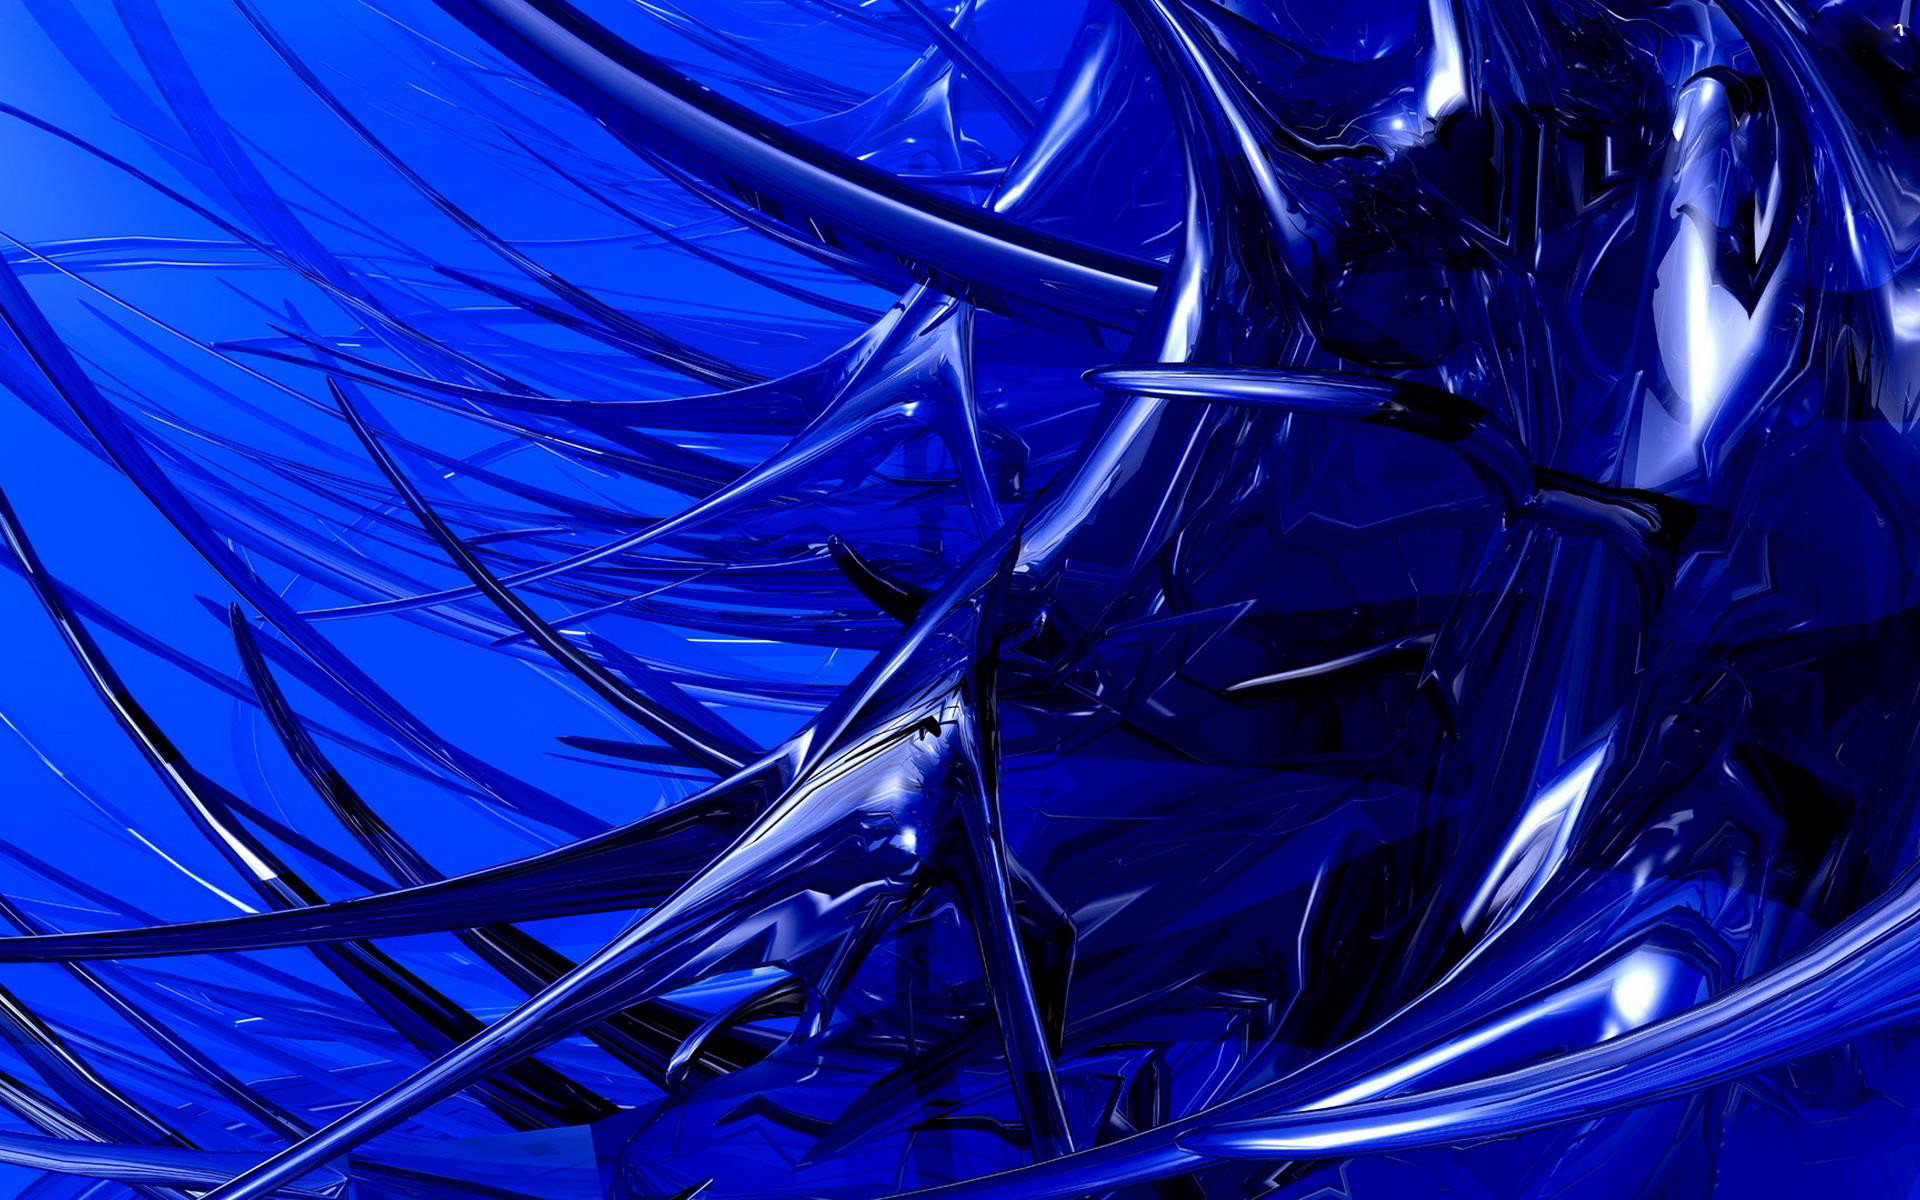 Blue 3d art hd images free download for desktop.